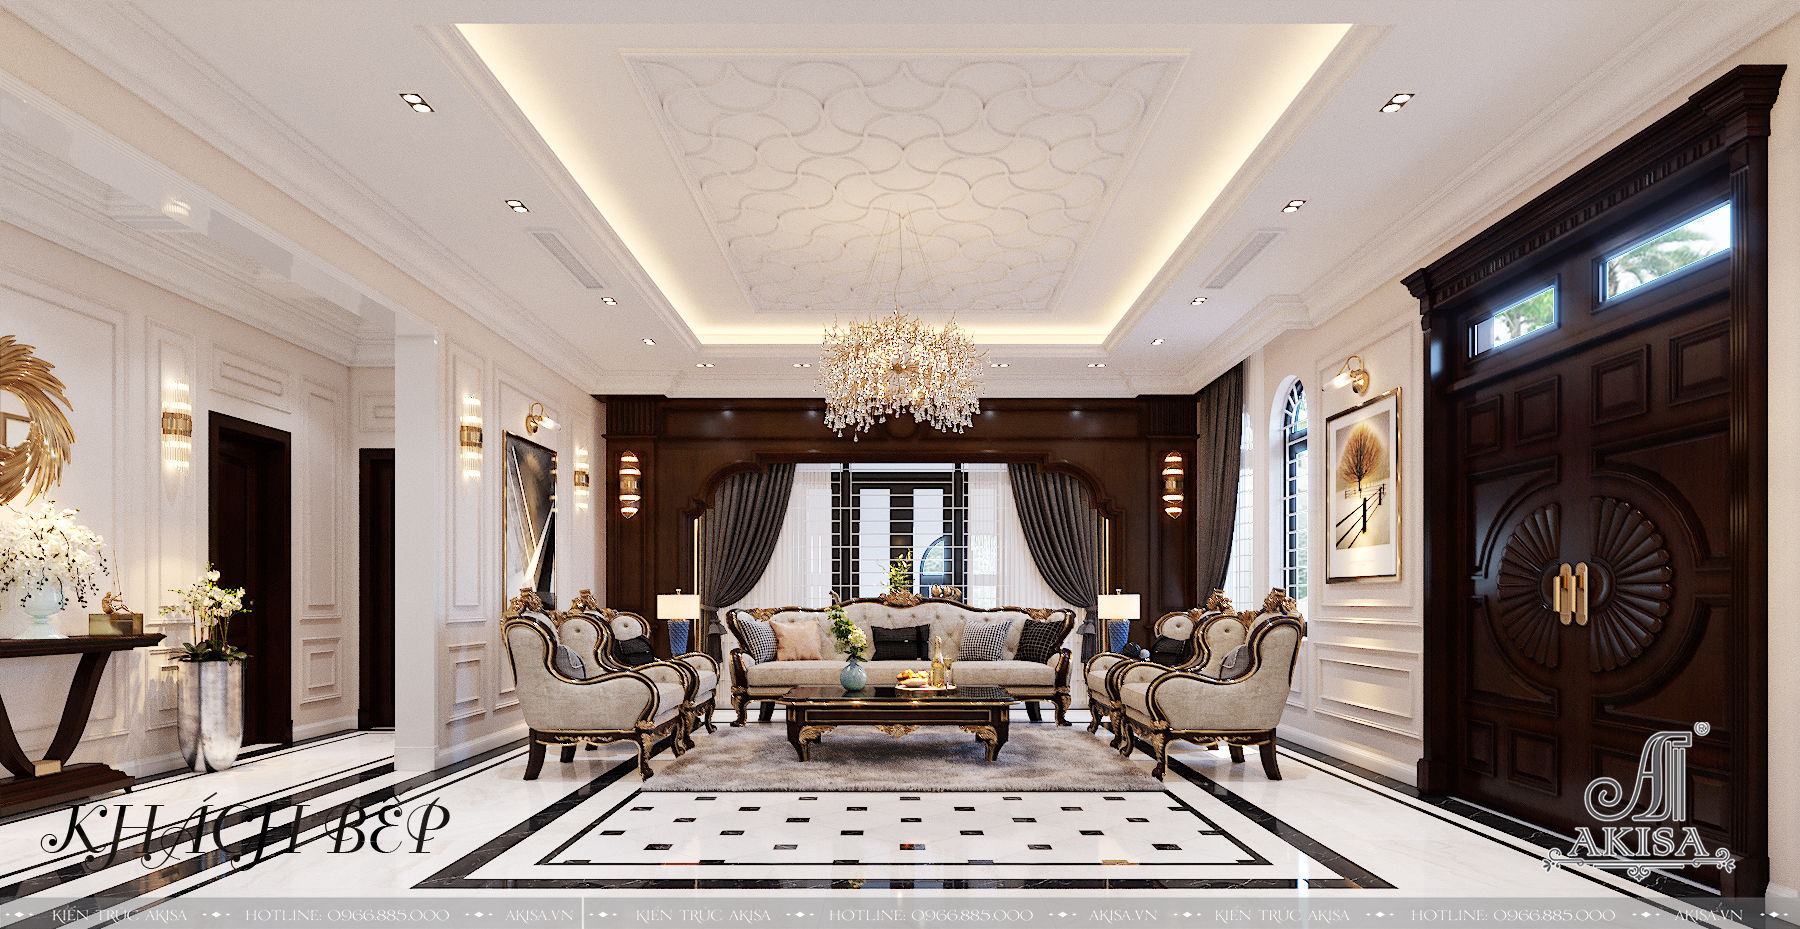 Phòng khách rộng rãi được thiết kế đơn giản, sang trọng với điểm nhấn là bộ bàn ghế sô pha đậm chất quý tộc châu  u 